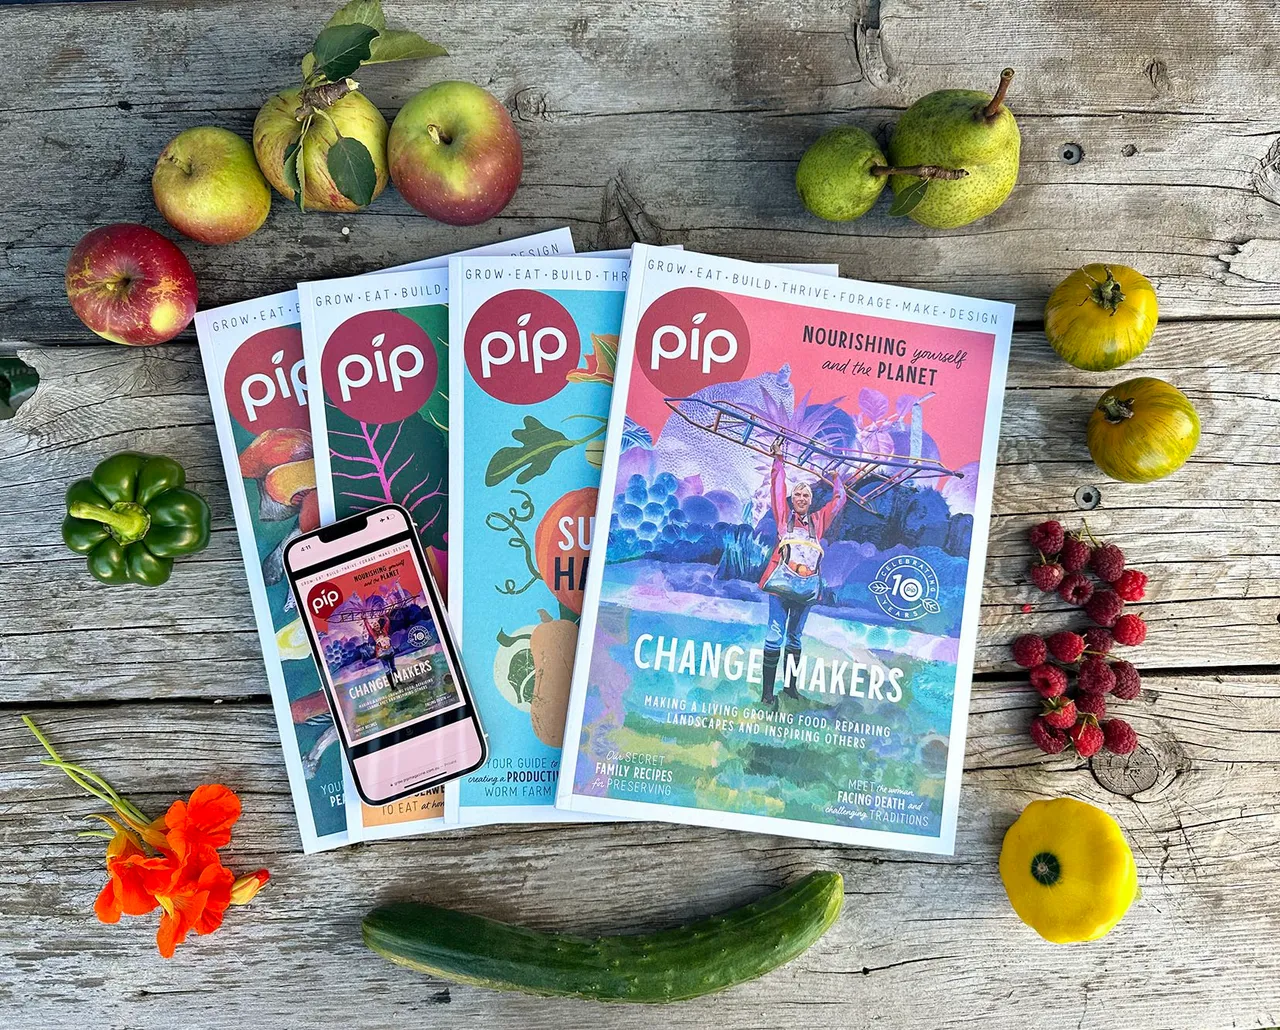 pip magazines